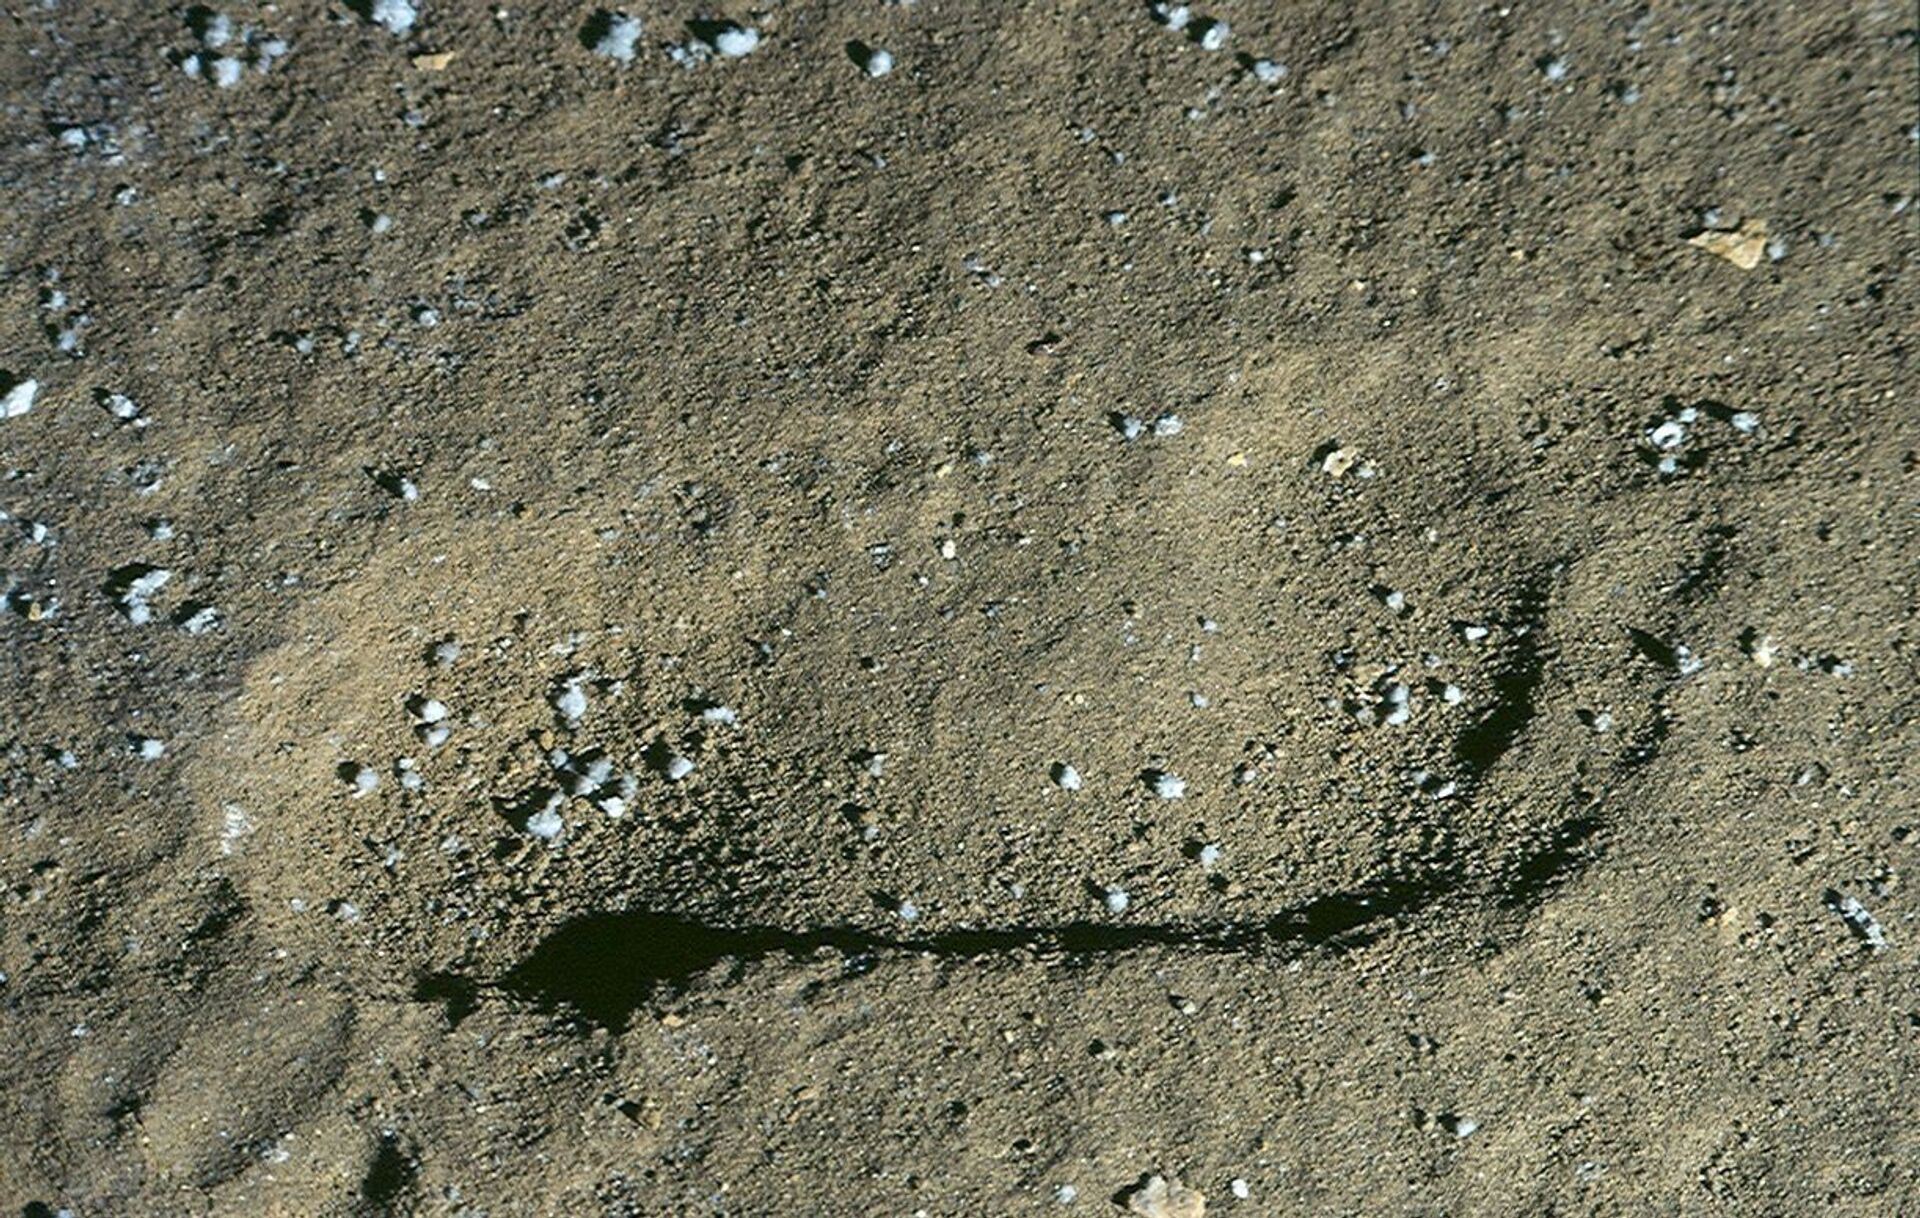 Pegadas humanas de mais de 4 mil anos são estudadas 50 anos depois de descobertas na Espanha (FOTOS) - Sputnik Brasil, 1920, 18.03.2021